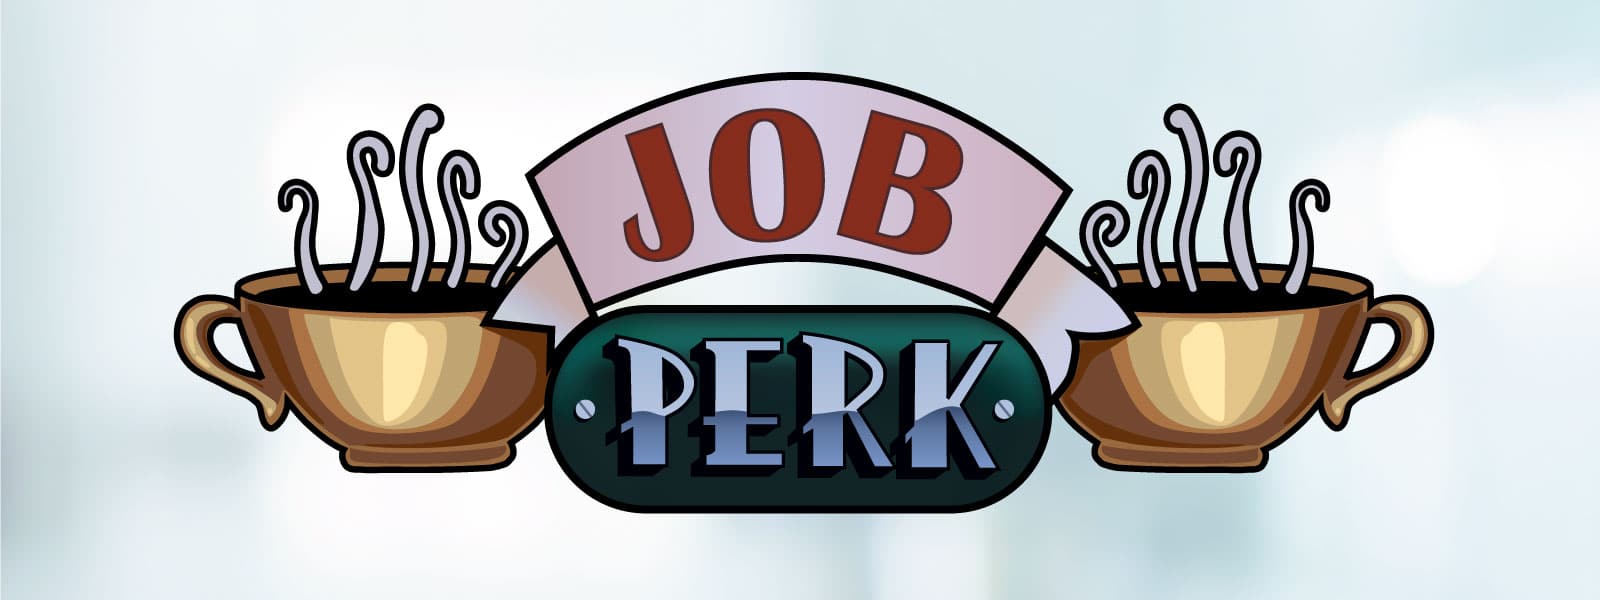 Job perks